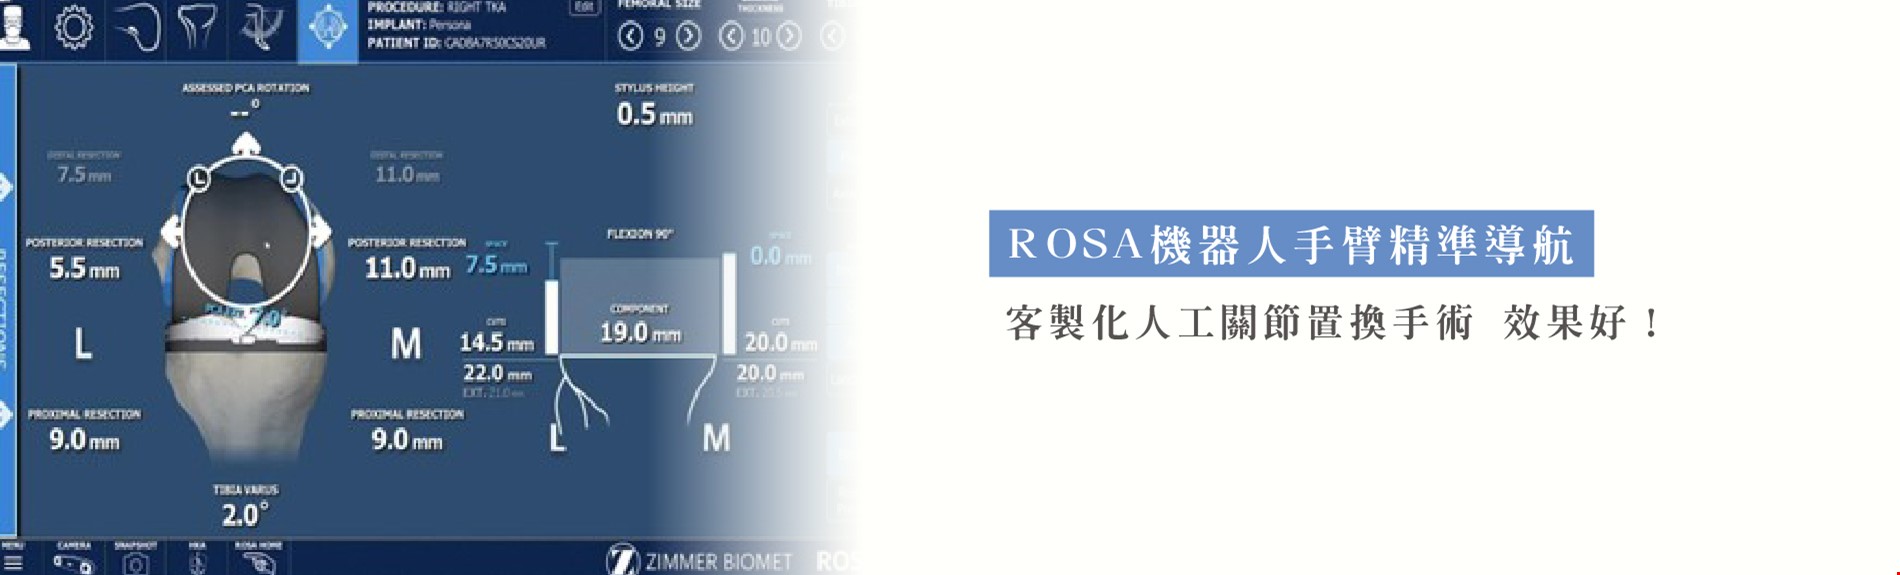 ROSA機器人手臂精準導航  客製化人工關節置換手術 效果好！